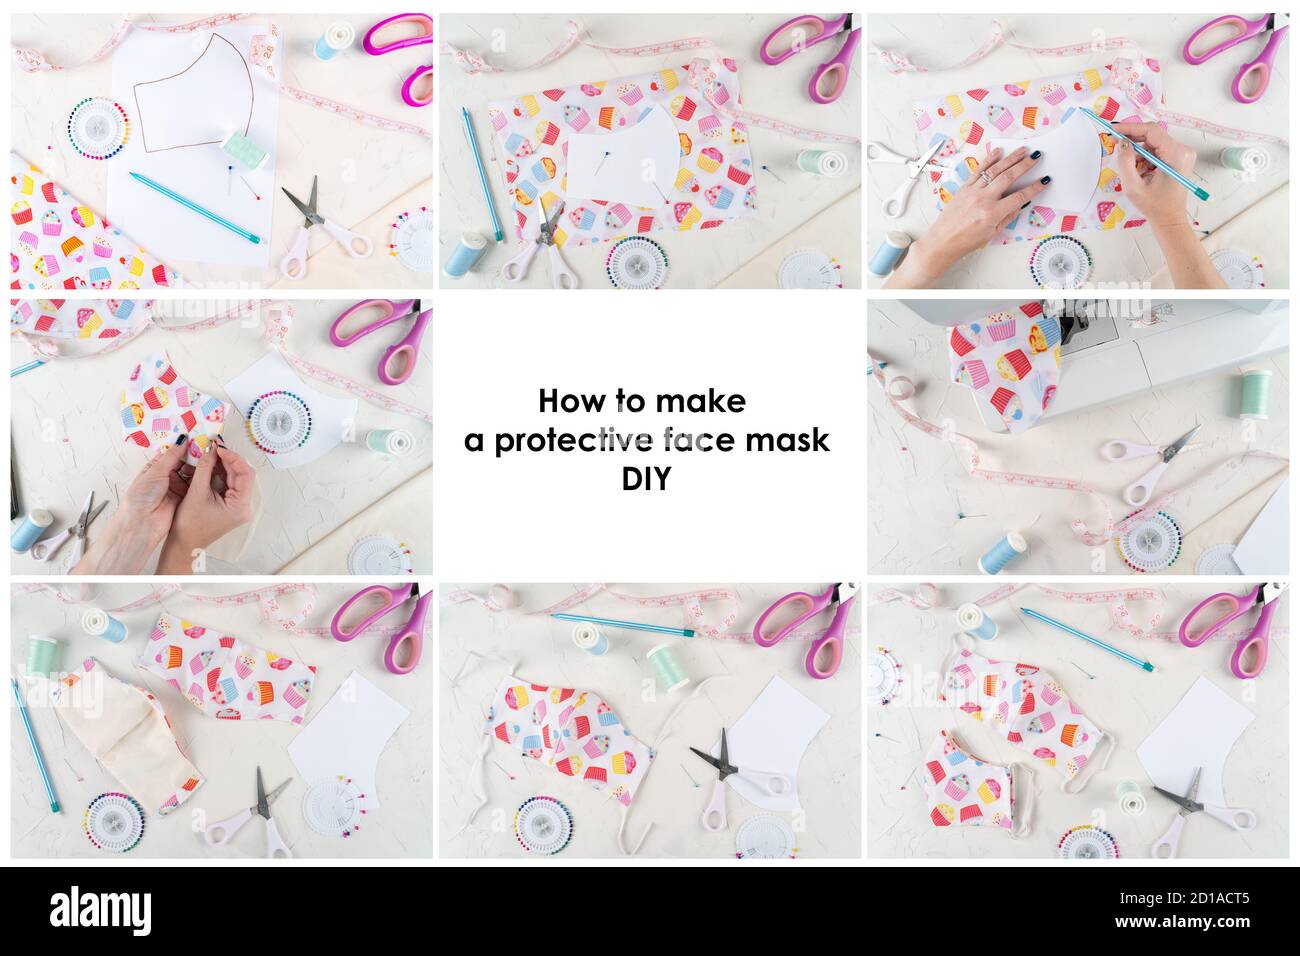 Istruzioni per la creazione di una maschera protettiva per il viso. Crea maschera da cucire, istruzioni dettagliate. Maschera fai da te. Attrezzi da cucire e materiali per maschera anti-virus. Zero rifiuti e coronavirus covid-19 concetto Foto Stock